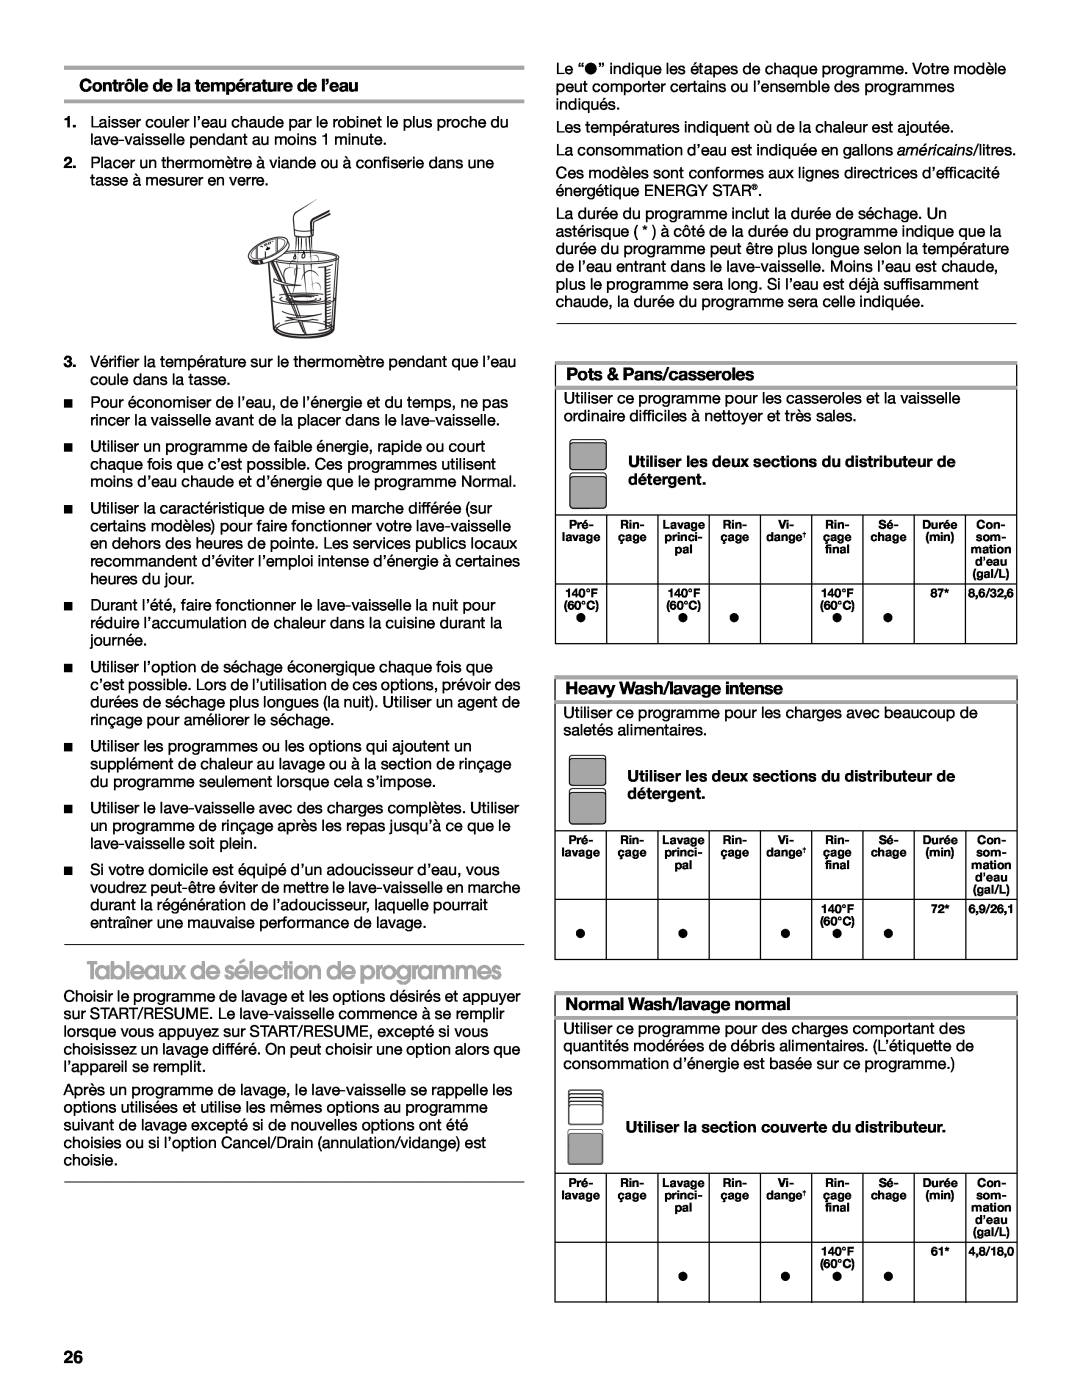 Whirlpool TUD6900 manual Tableaux de sélection de programmes, Contrôle de la température de l’eau, Pots & Pans/casseroles 